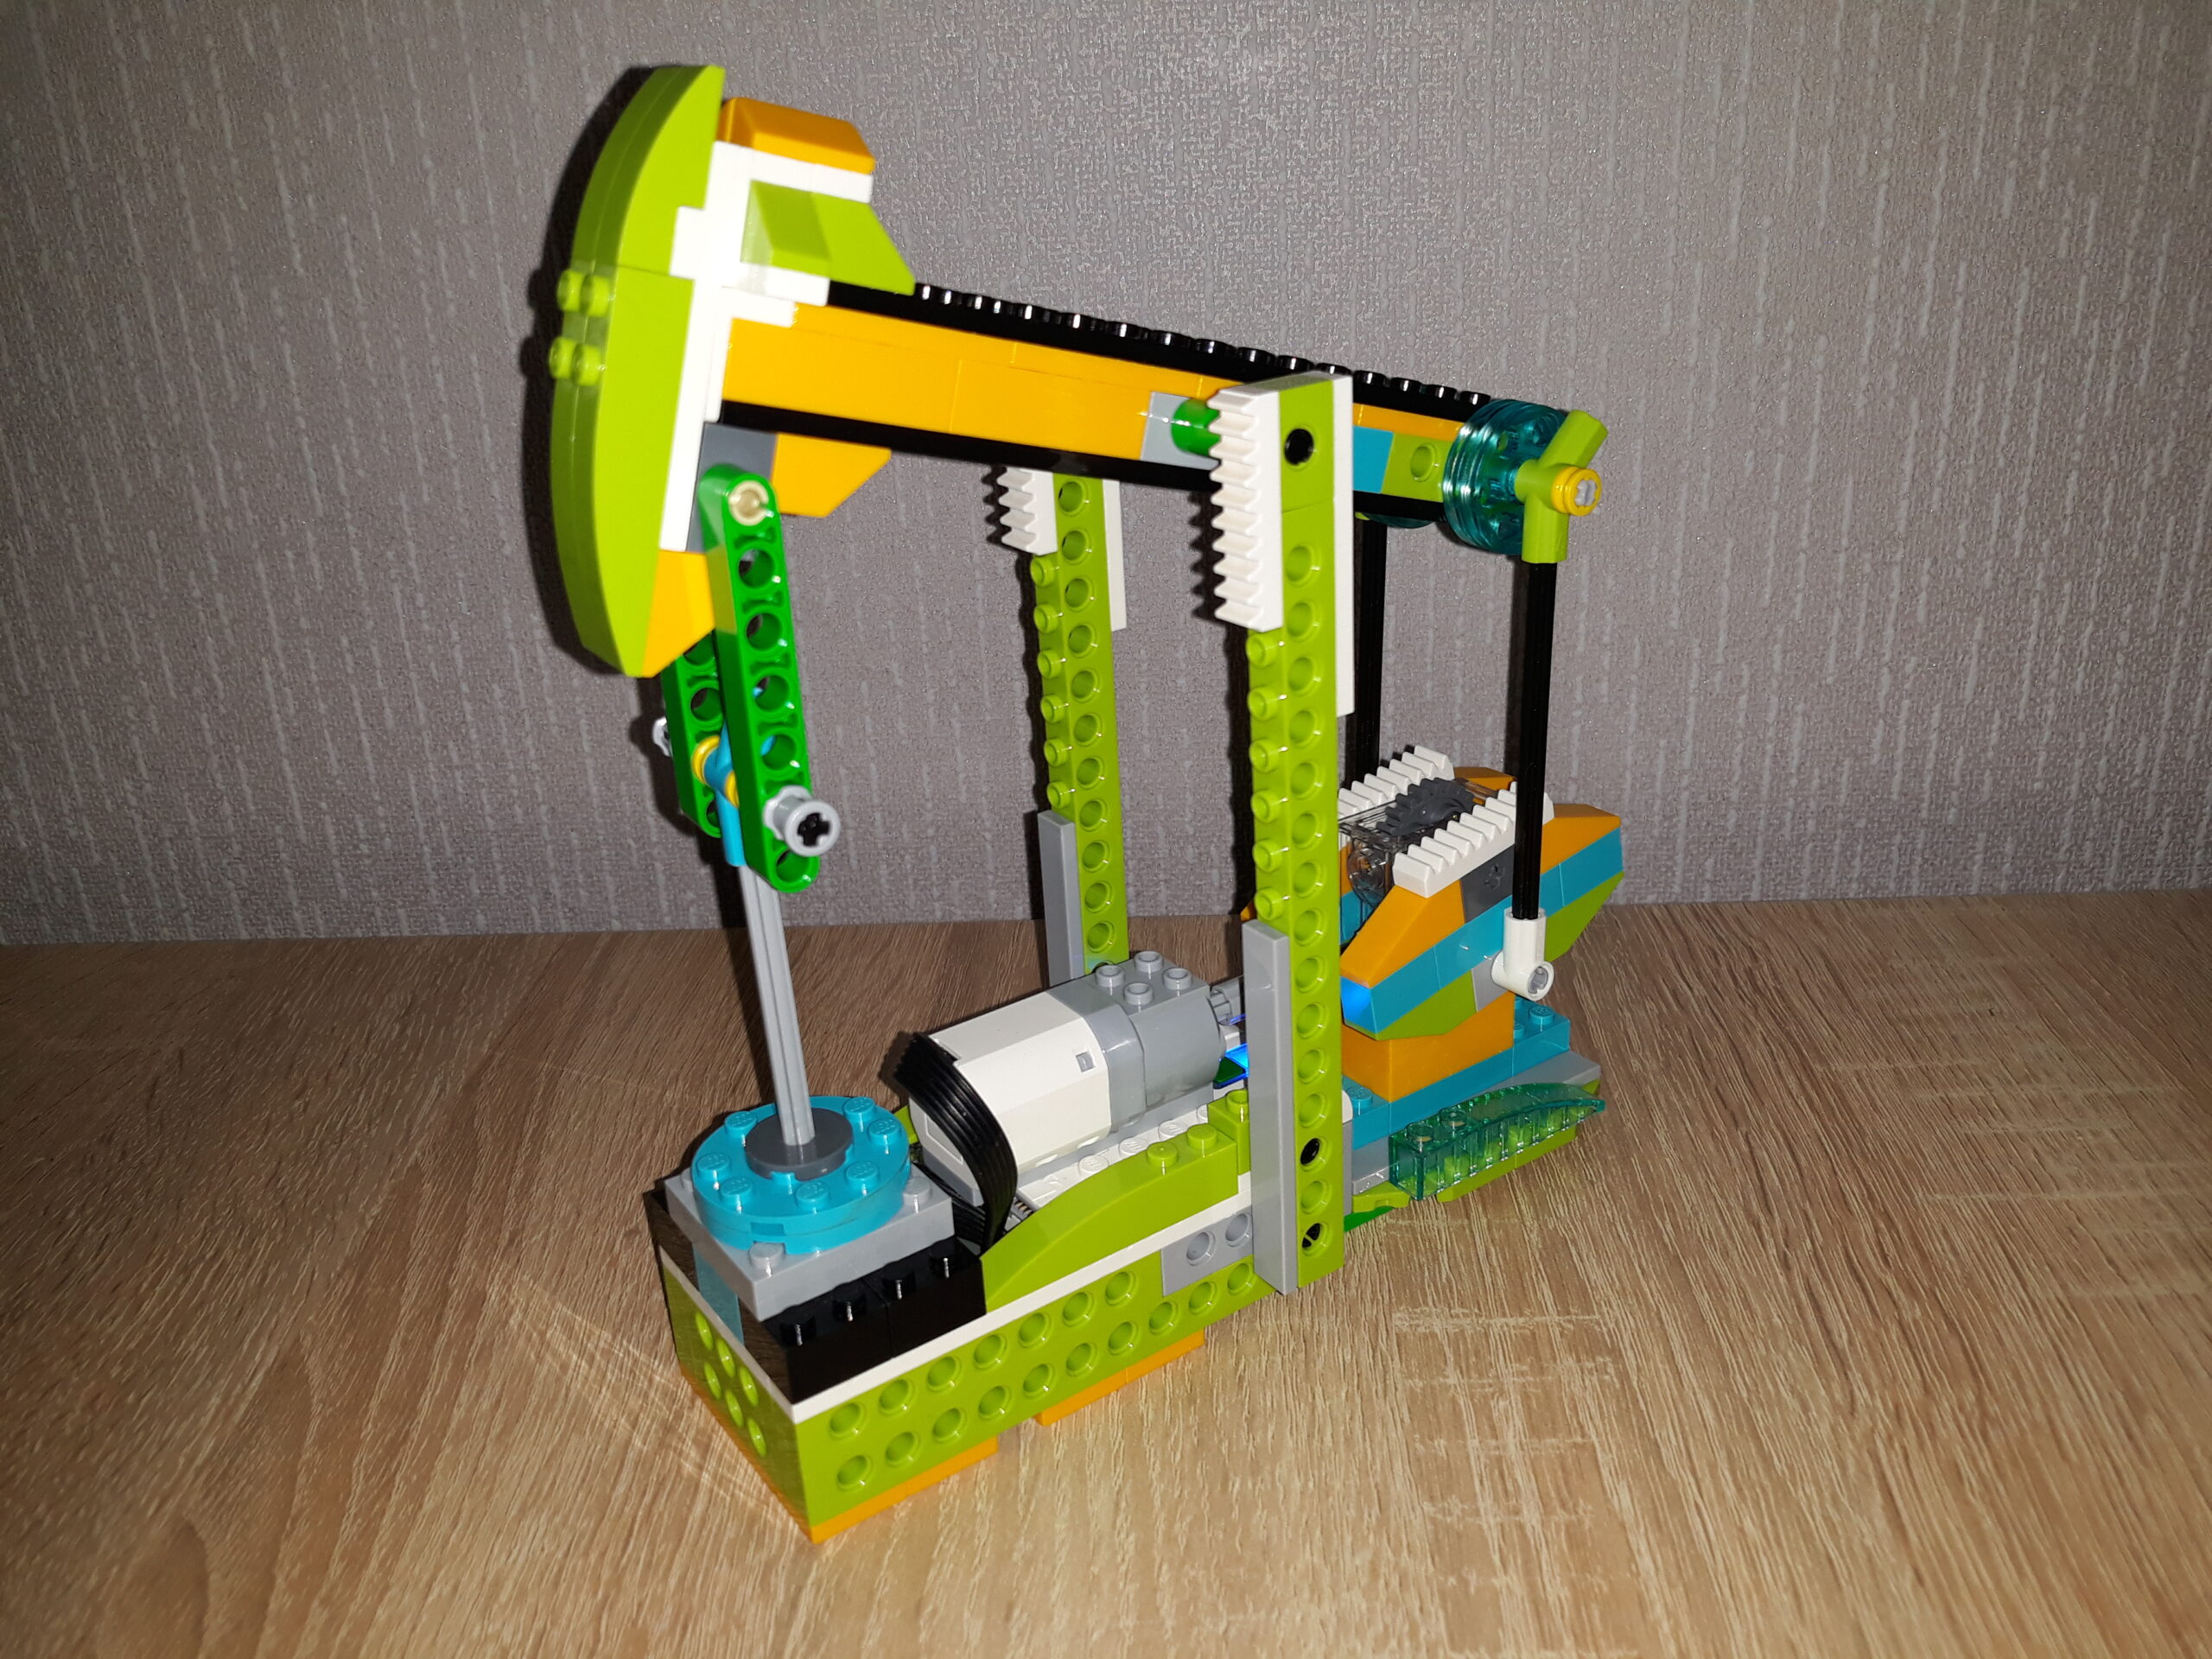 Скачать инструкцию по сборке из набора LEGO Education WeDo 2.0 Нефтяная вышка